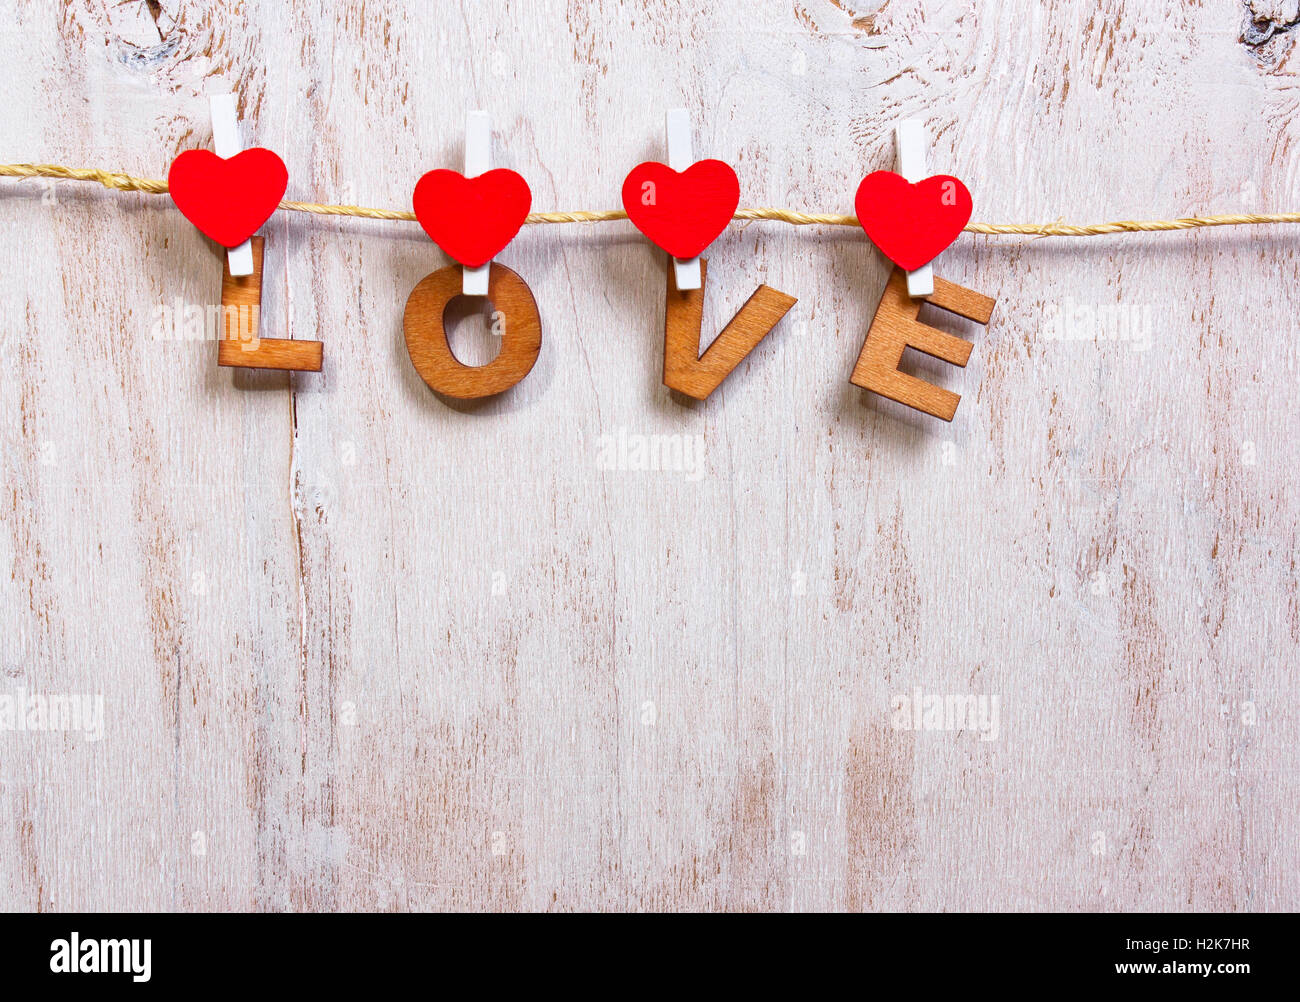 Lettere di legno e di cuore la formazione di parola amore su legno vecchio sfondo bianco Foto Stock